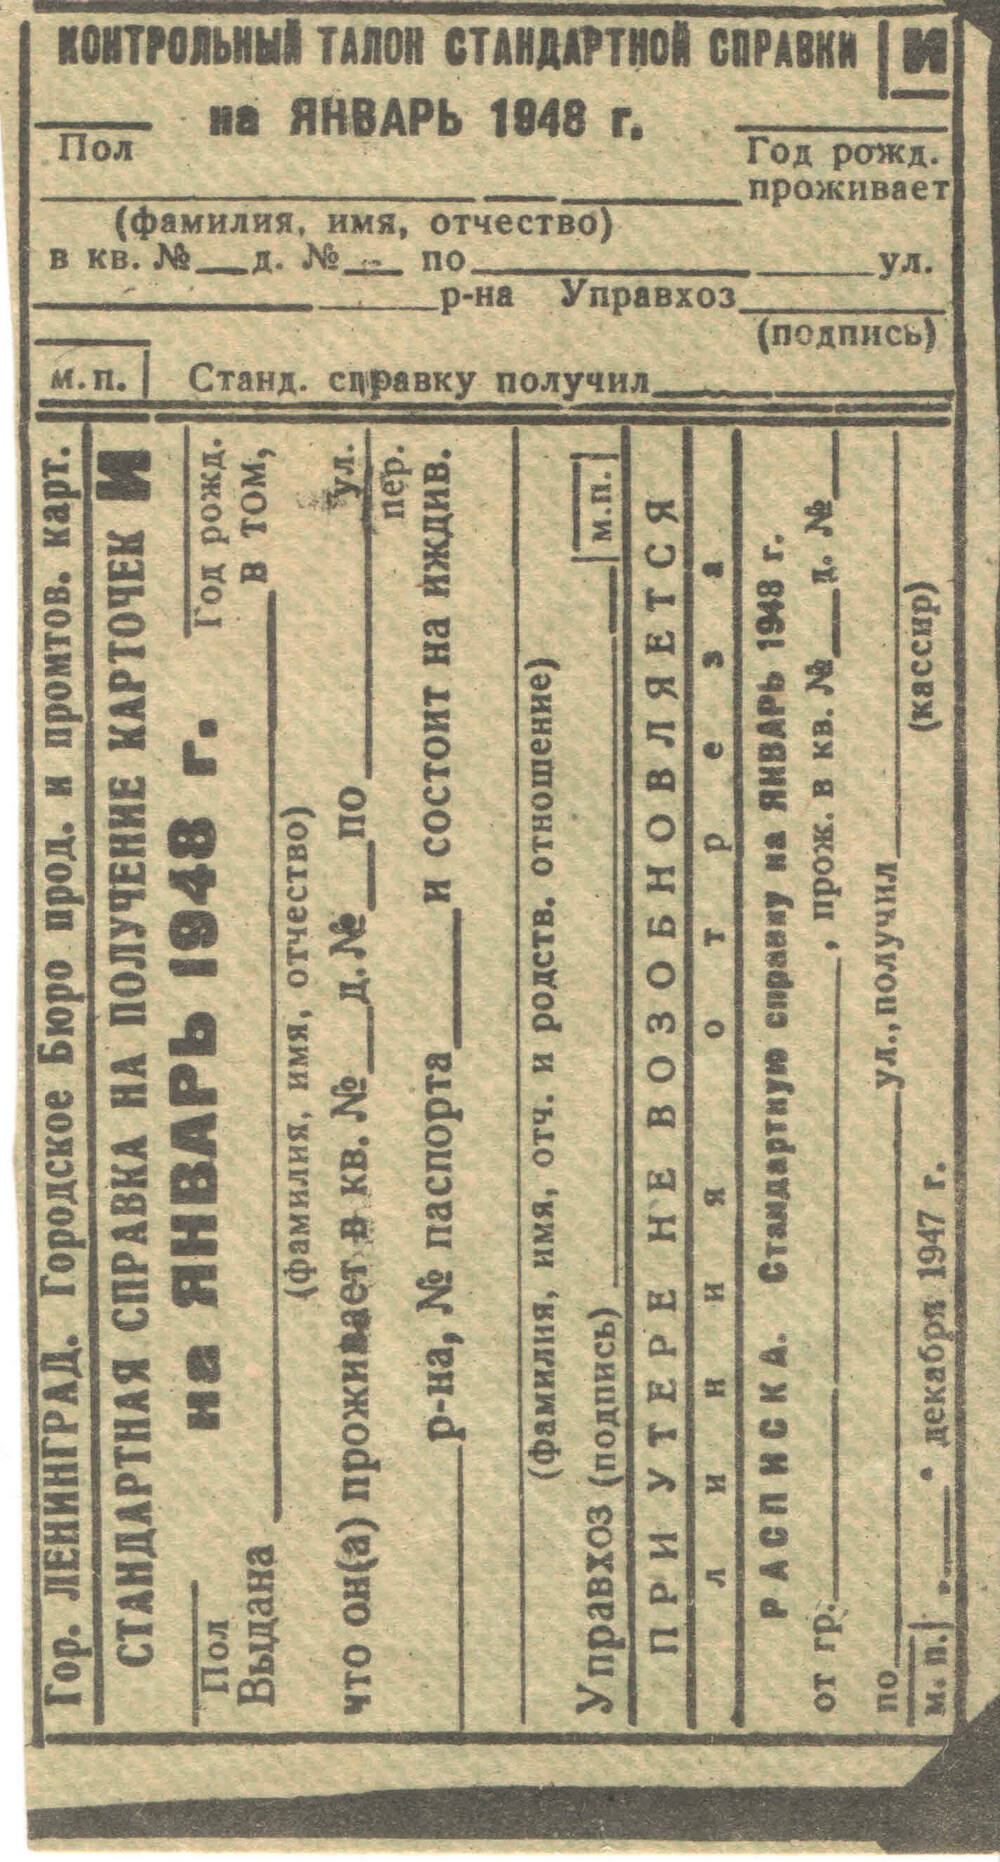 Справка стандартная на получение карточки на январь 1948 г. на иждивенца. Передана археологом Отрадненского музея Ложкиным Михаилом Николаевичем.